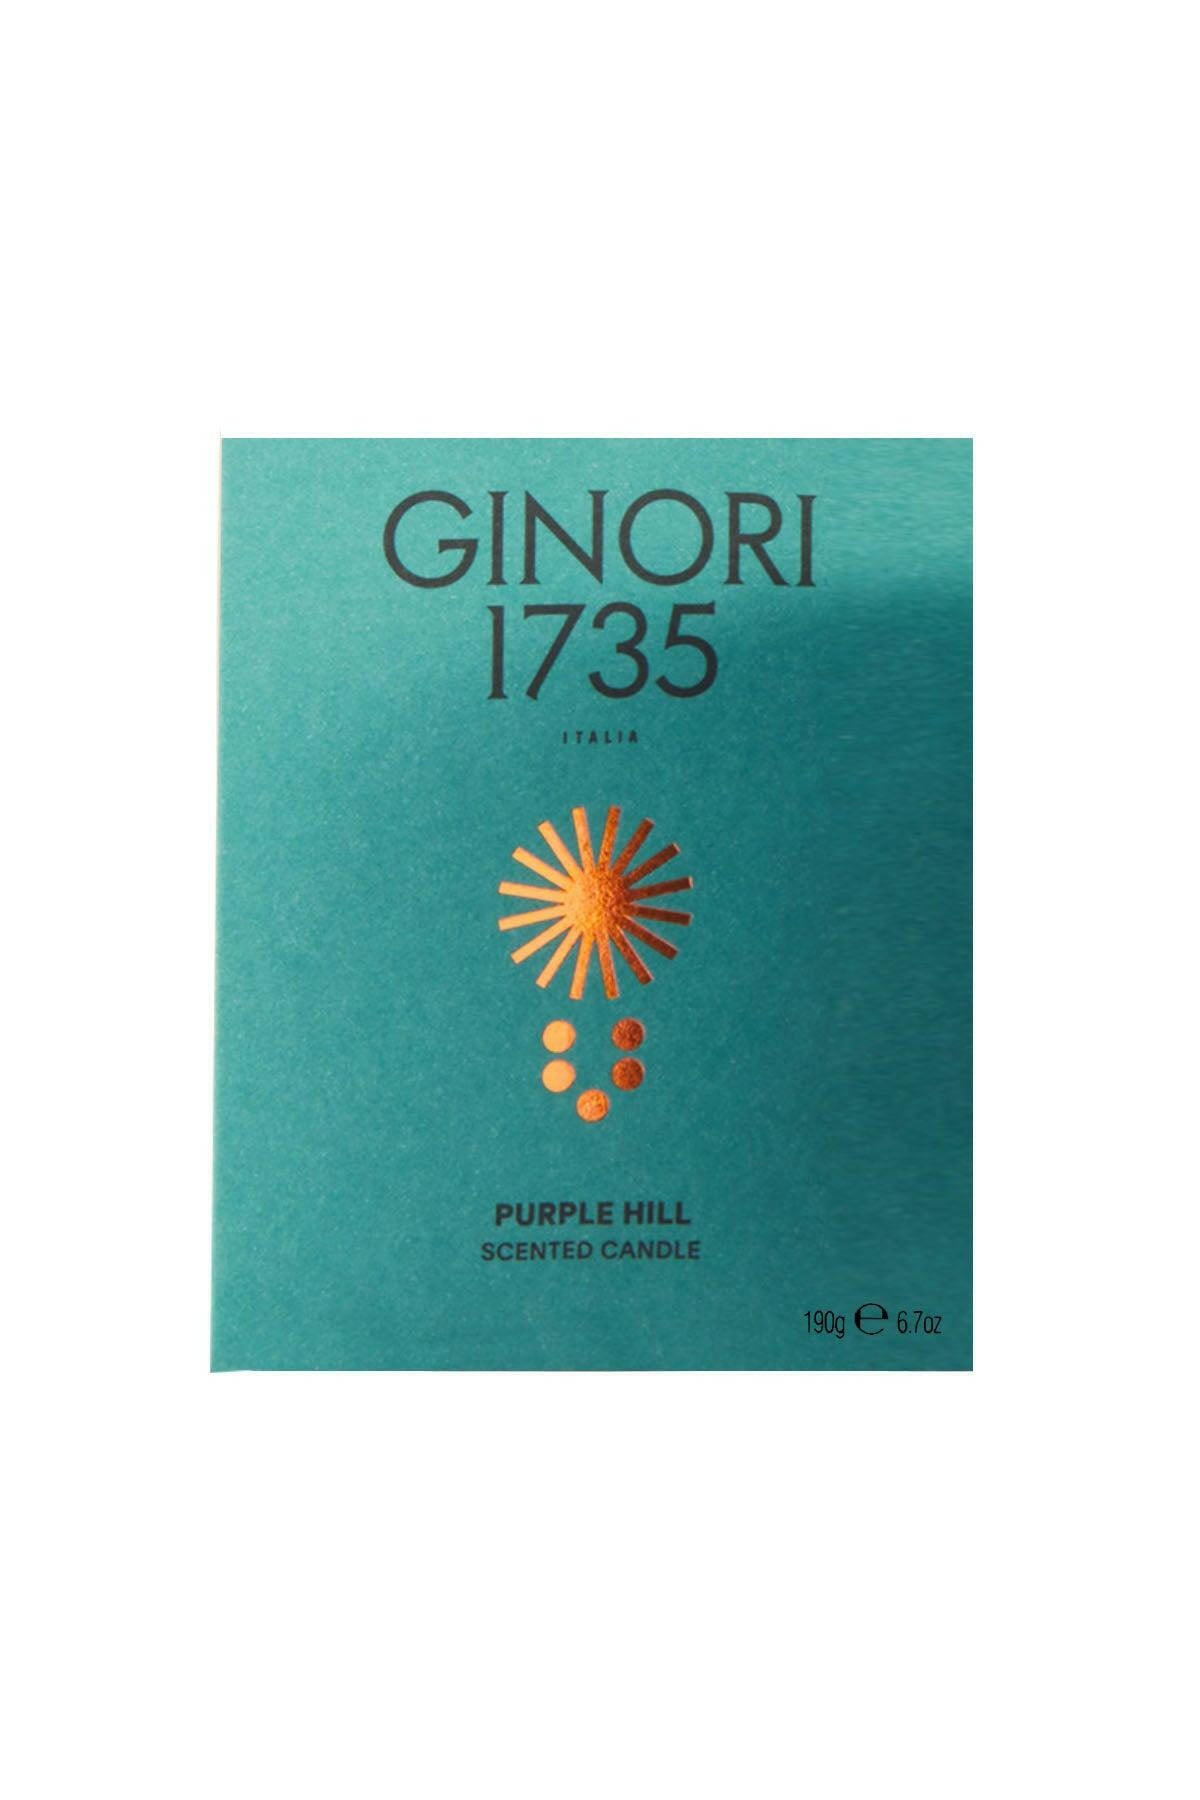 Ginori 1735 Purple Hill Scented Candle Refill For Il Seguace 190 Gr - JOHN JULIA